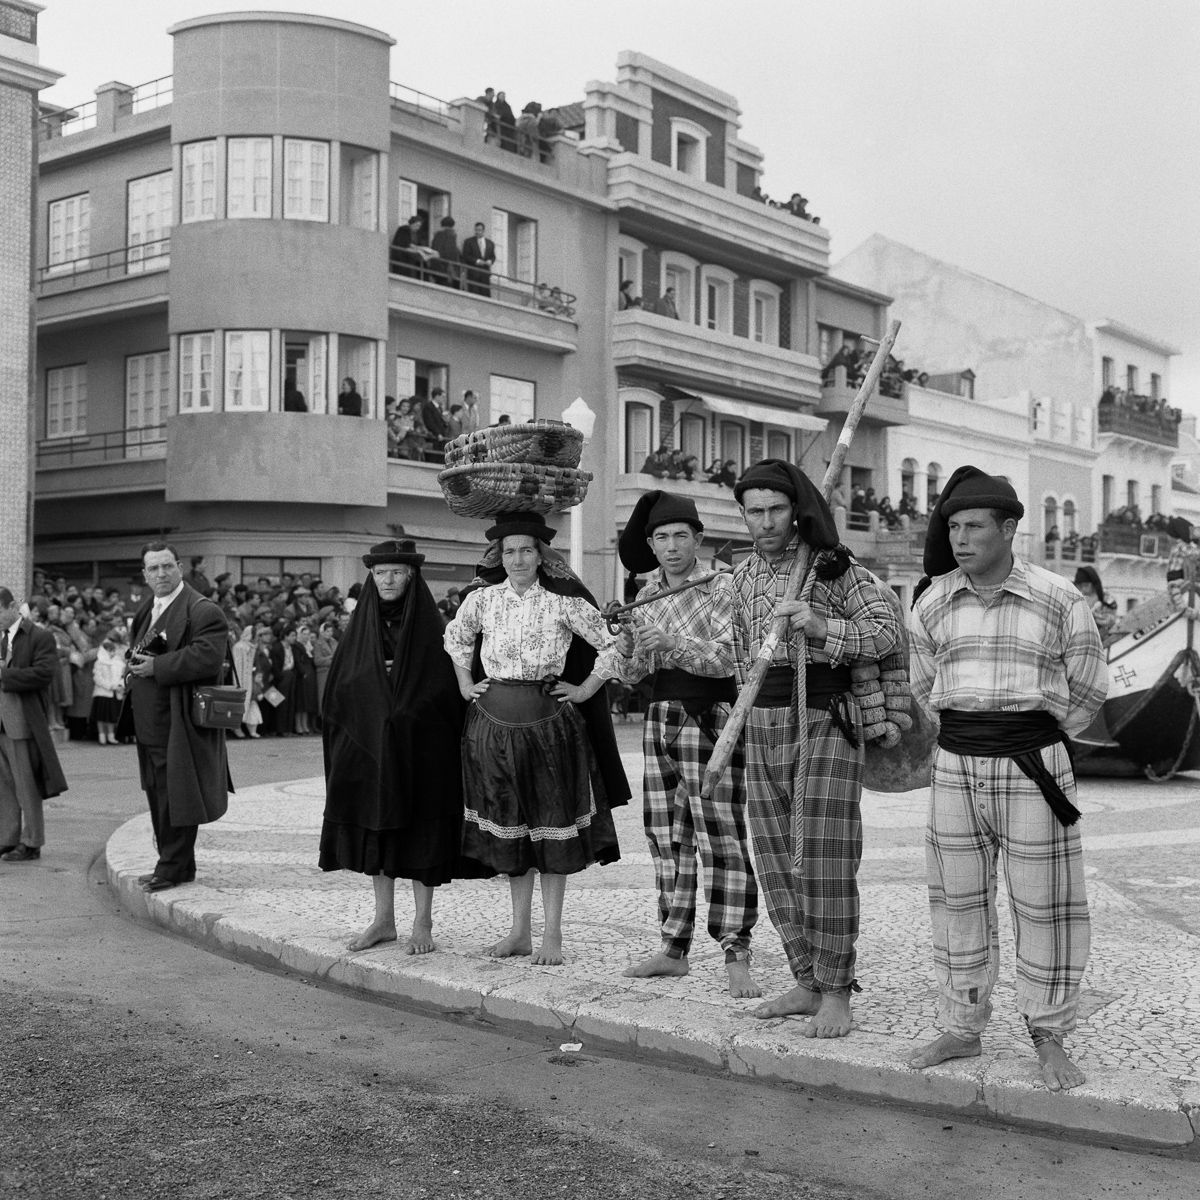 Fotografias deslumbrantes capturam a cultura da pesca dos anos 50 em Portugal 29